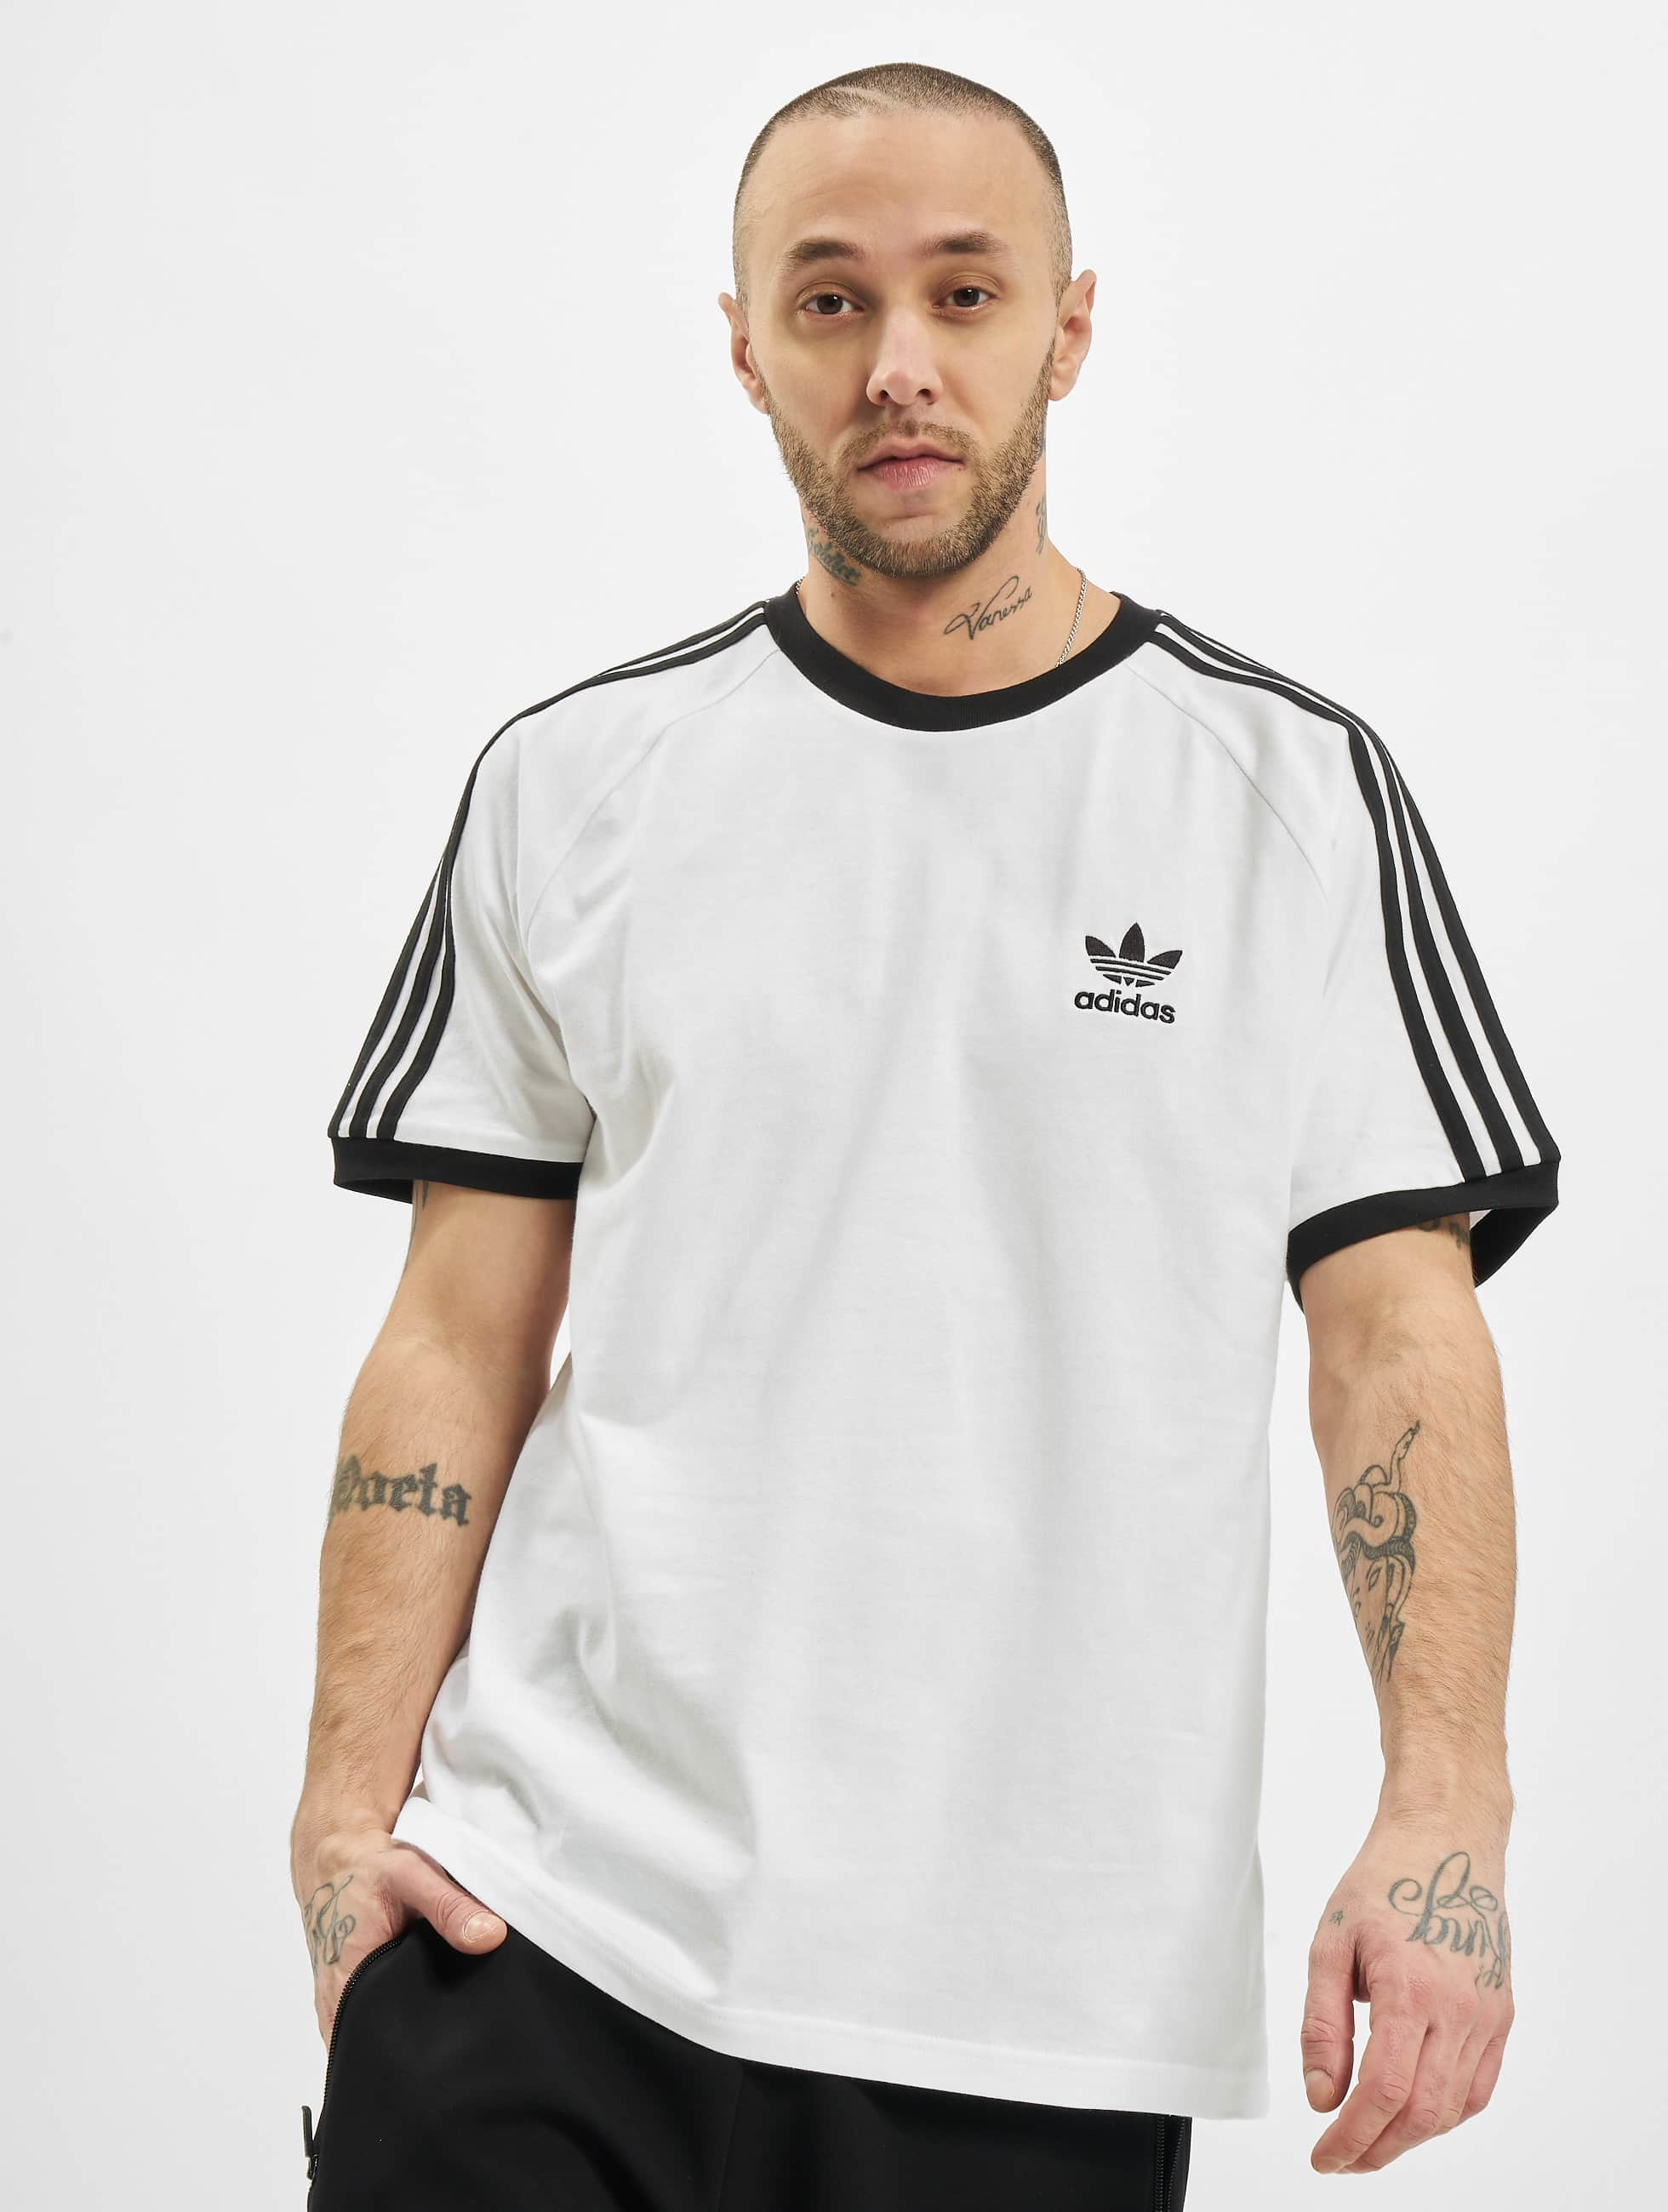 Uitdaging Rationalisatie echo adidas Originals bovenstuk / t-shirt 3-Stripes in wit 801790